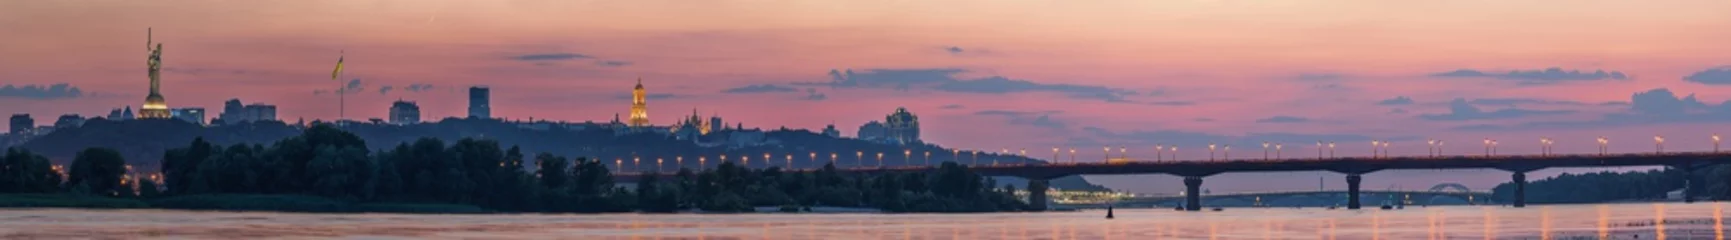 Fotobehang Uitzicht op Kiev Pechersk Lavra, Motherland Monument, Kiev bruggen en de rivier de Dnjepr, na zonsondergang wordt een dunne halve maan aan de oranje hemel gezien. © underwaterstas